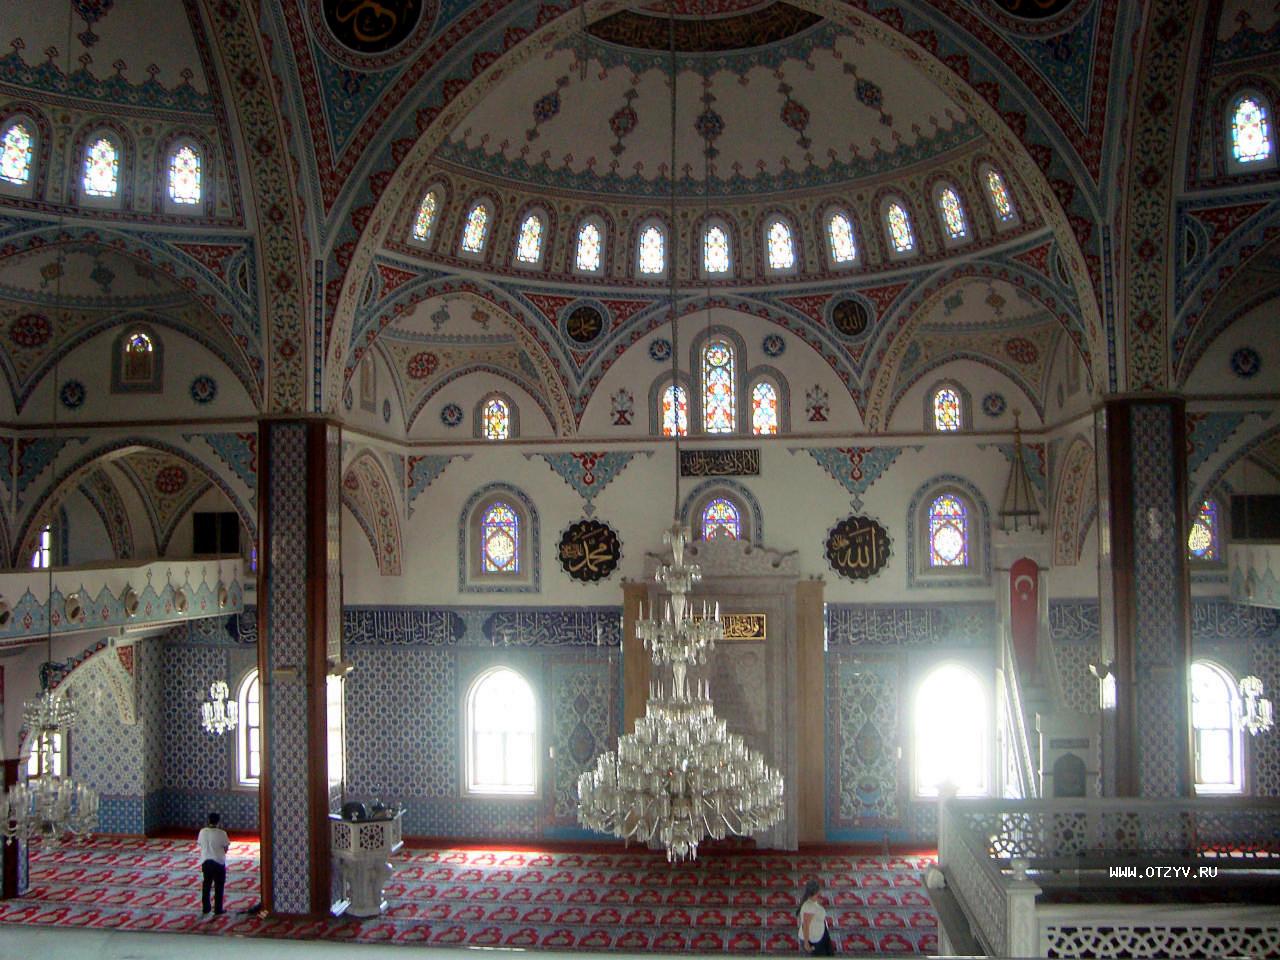 Манавгат мечеть с четырьмя минаретами фото